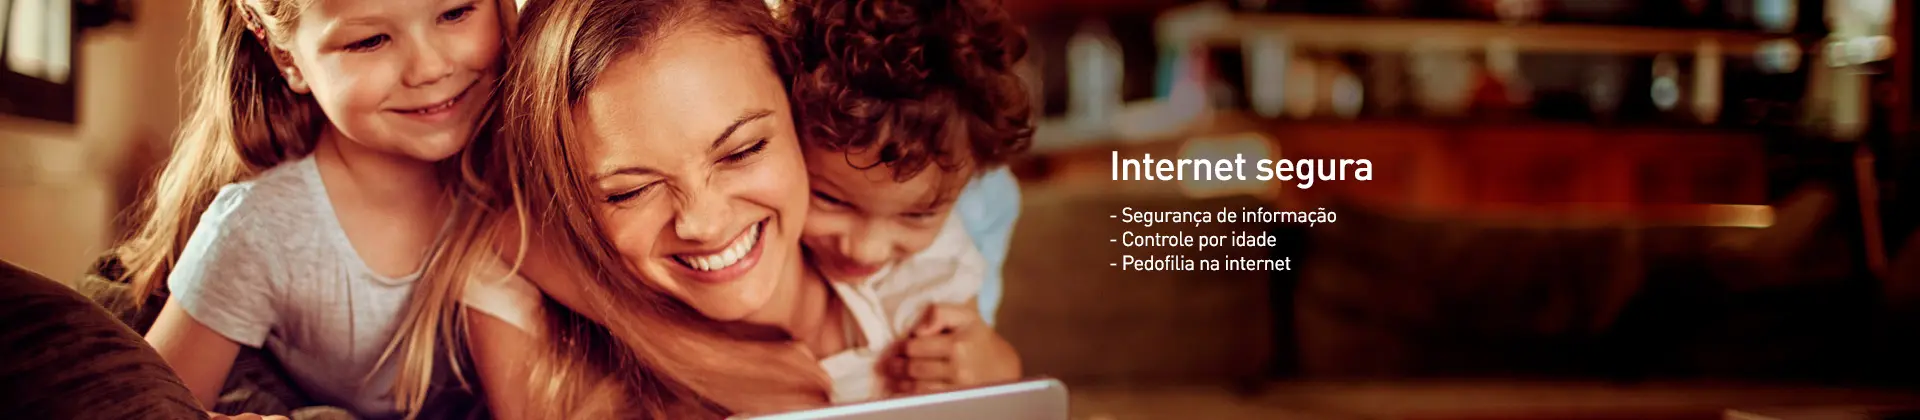 imagem de uma mãe e dois filhos sorrindo e olhando para um tablet com a mensagem Internet segura (segurança de informação, controle por idade e pedofilia na internet)